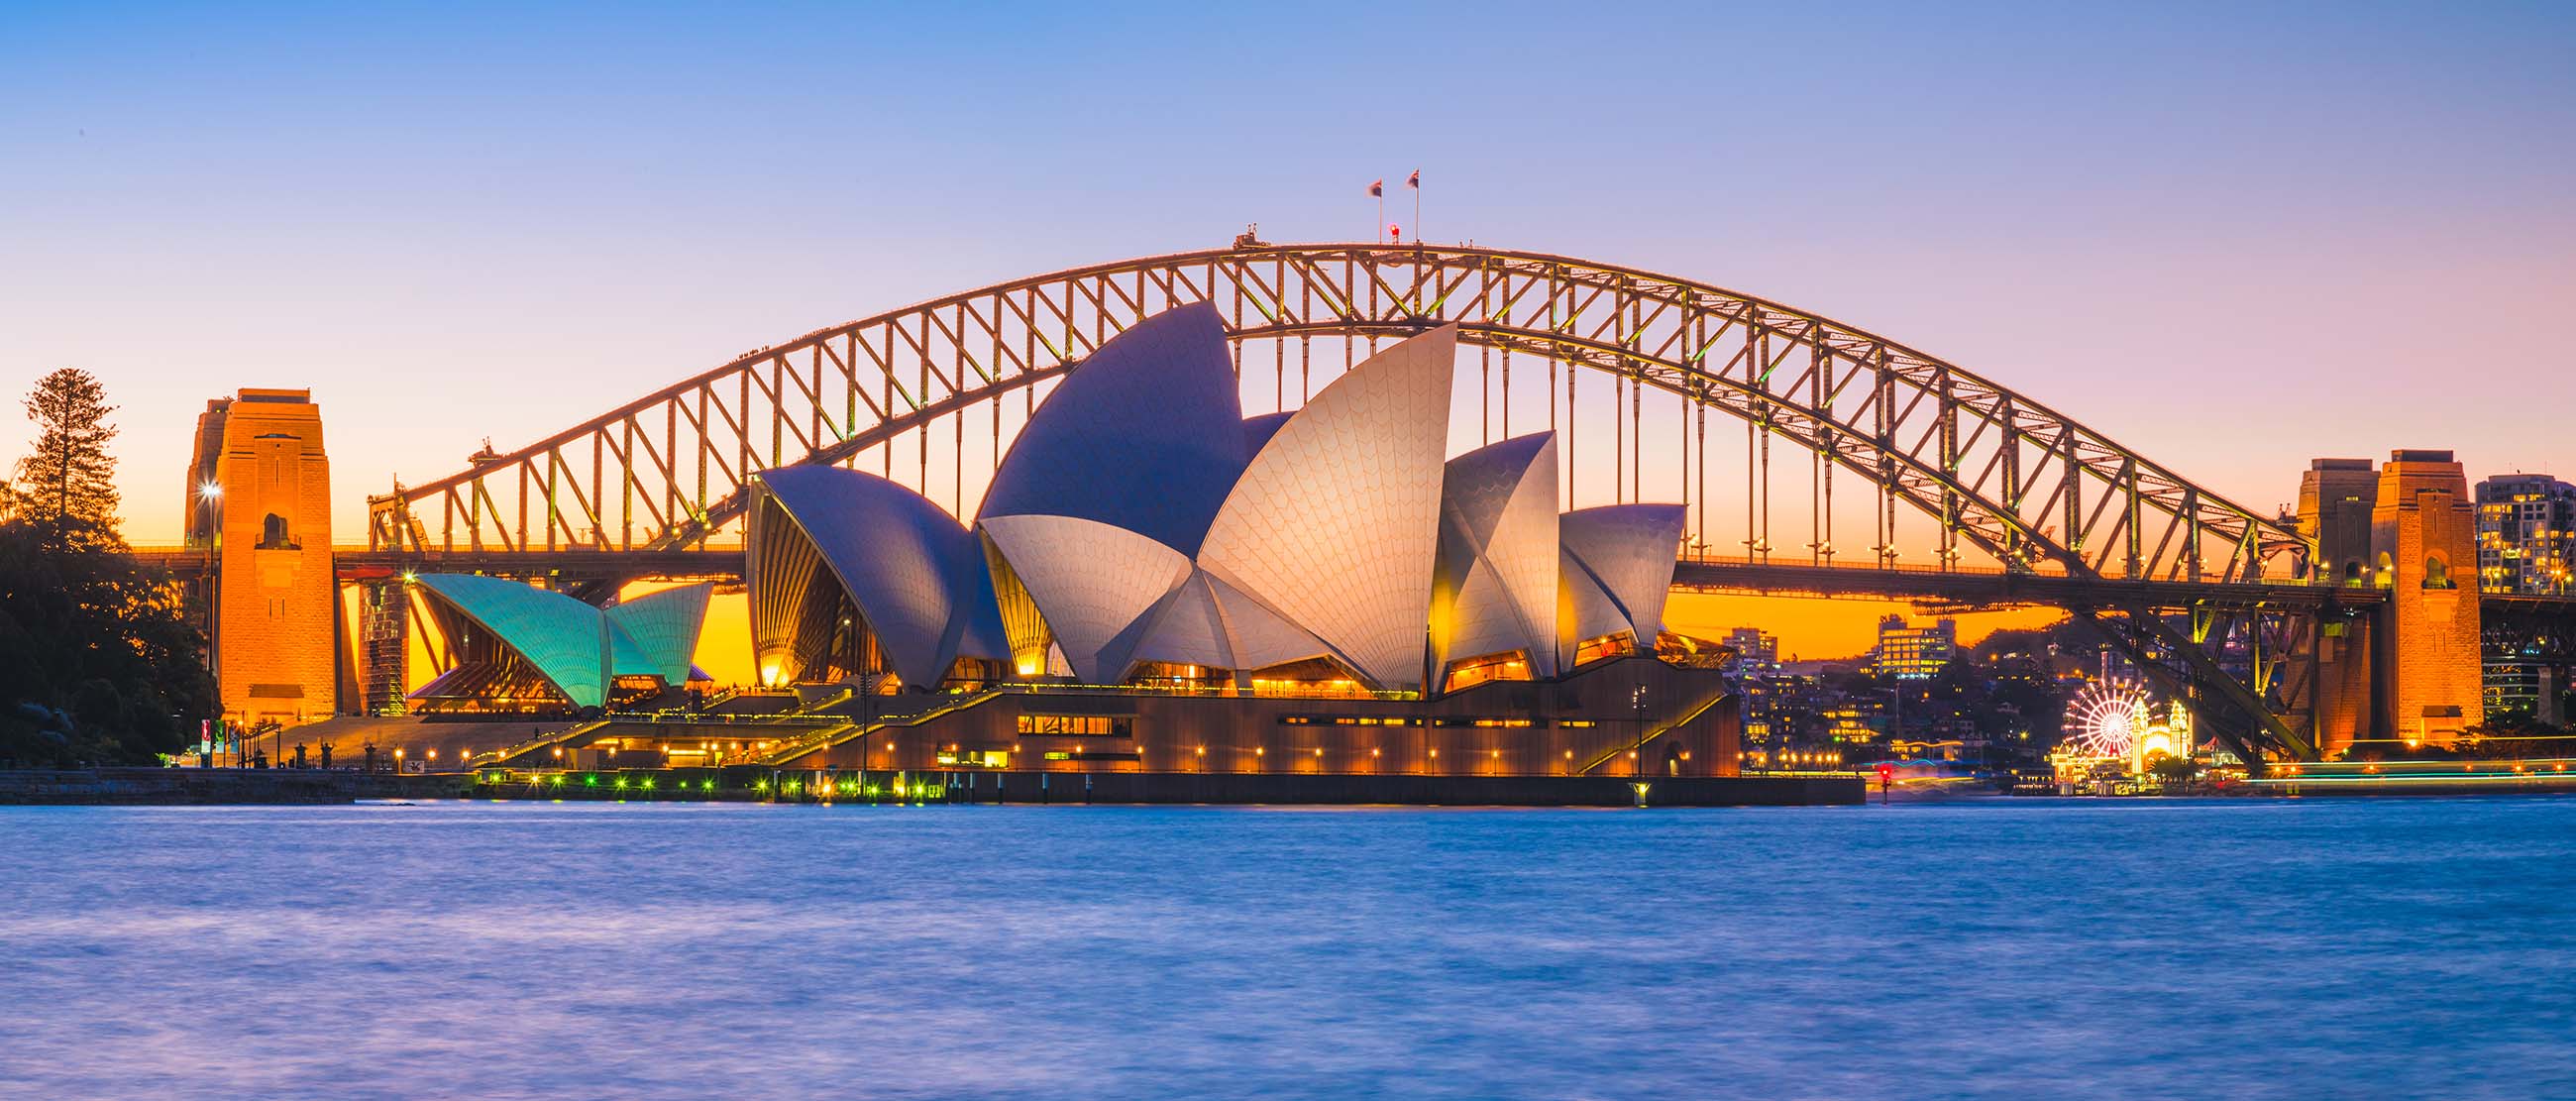 Nhà hát Sydney Opera House là một trong những biểu tượng của thành phố Sydney